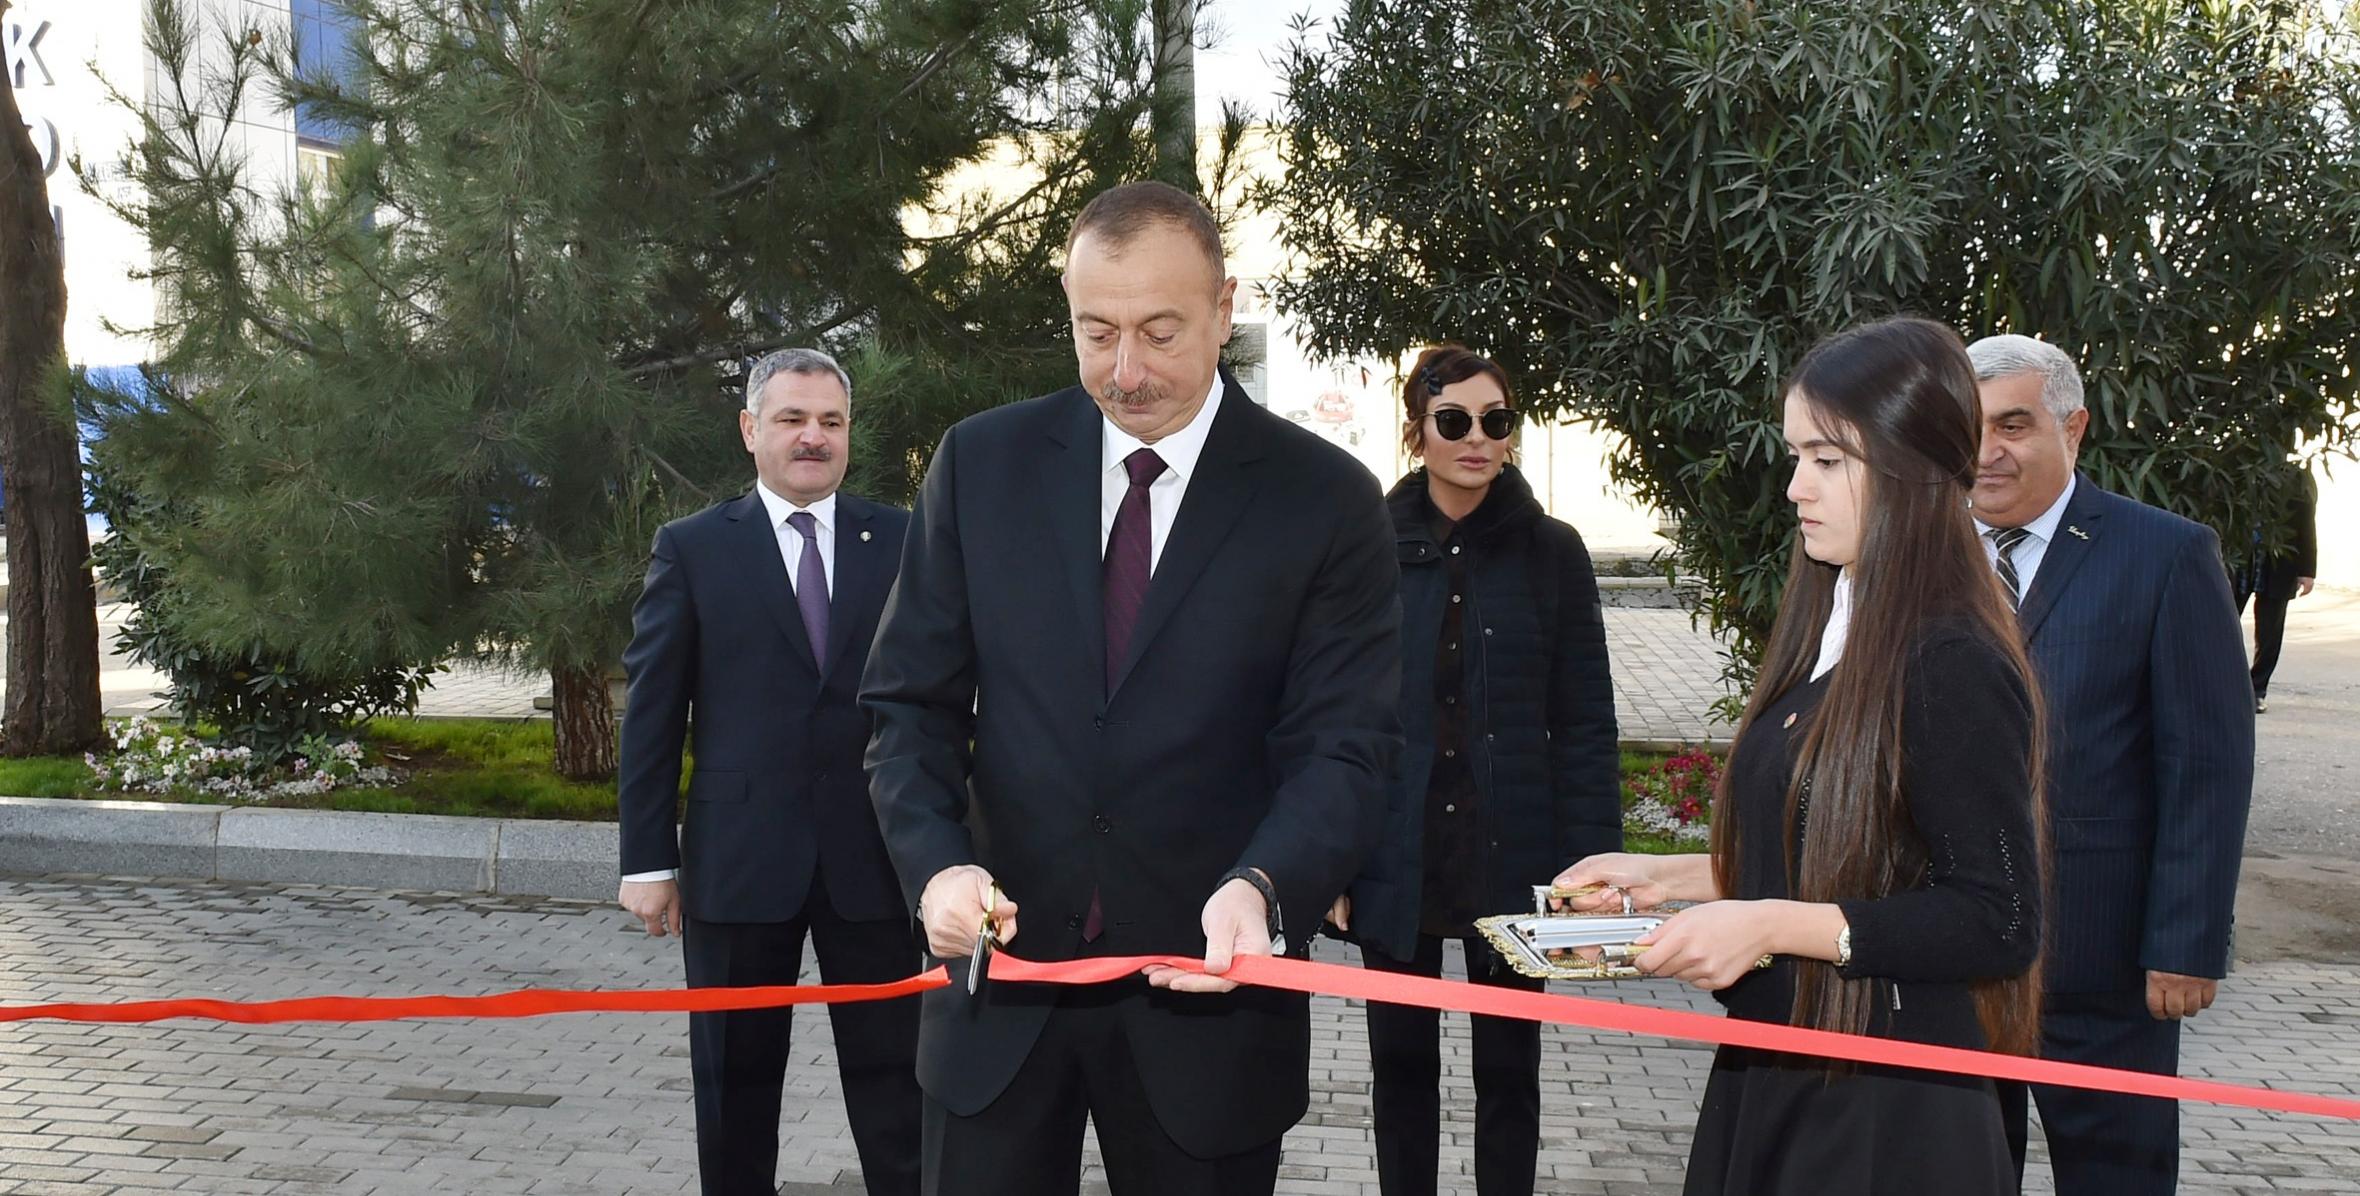 Ильхам Алиев принял участие в открытии нового административного здания Тертерской районной организации партии «Ени Азербайджан» (ПЕА)